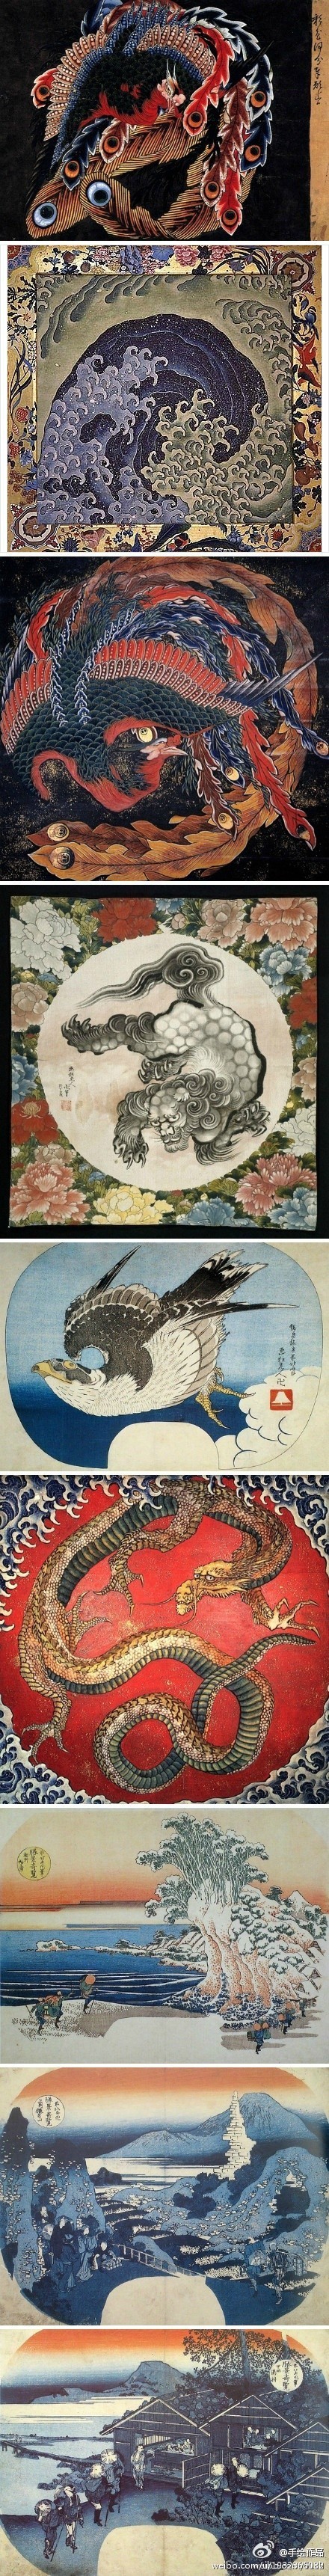 日本江户时代的浮世绘画家葛饰北斋的作品,创作这些画时他已八十余岁